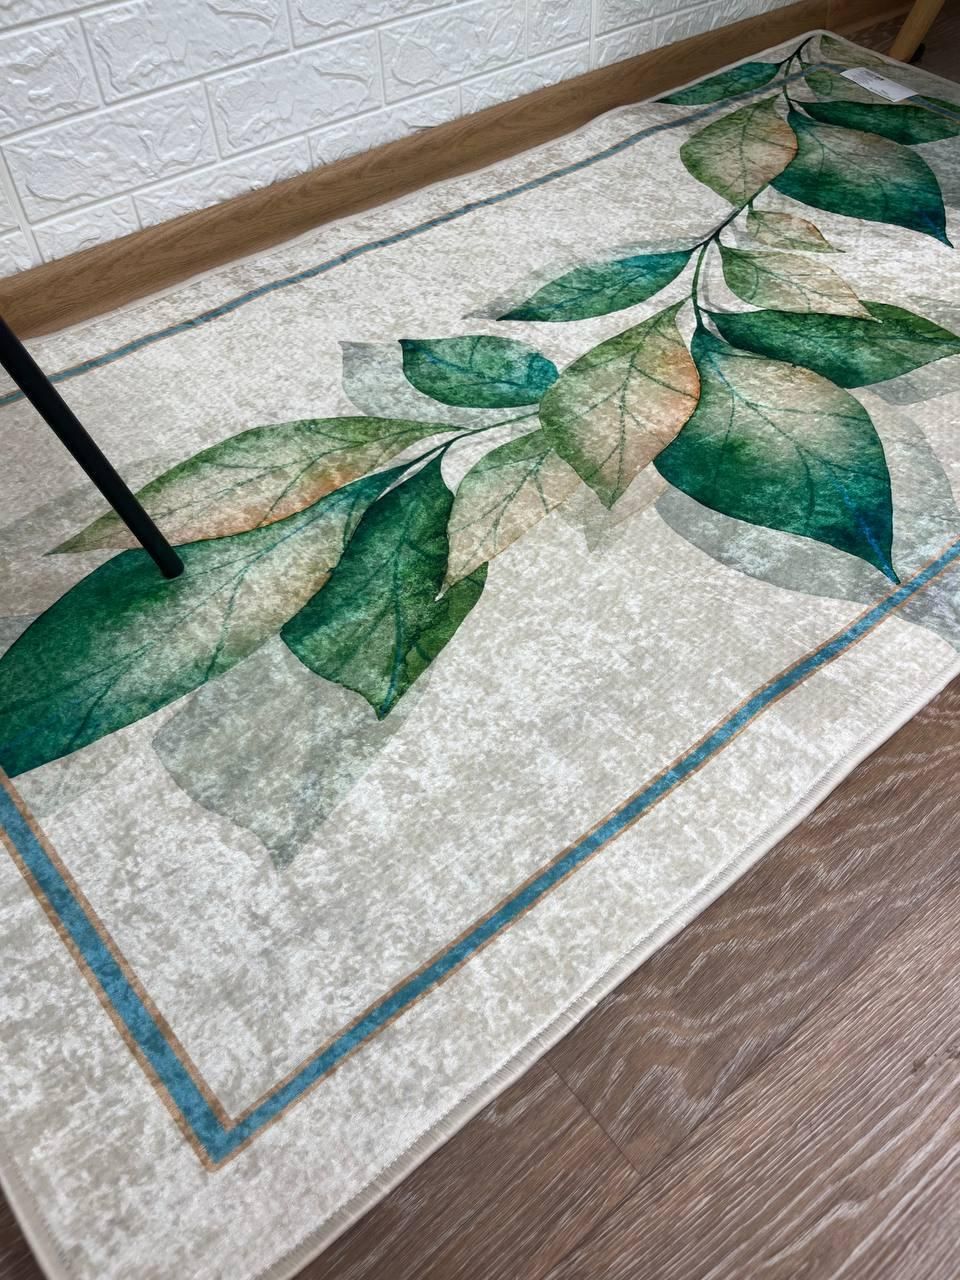 Турецький безворсовий килим "Грін" підкладка з еко-шкіри